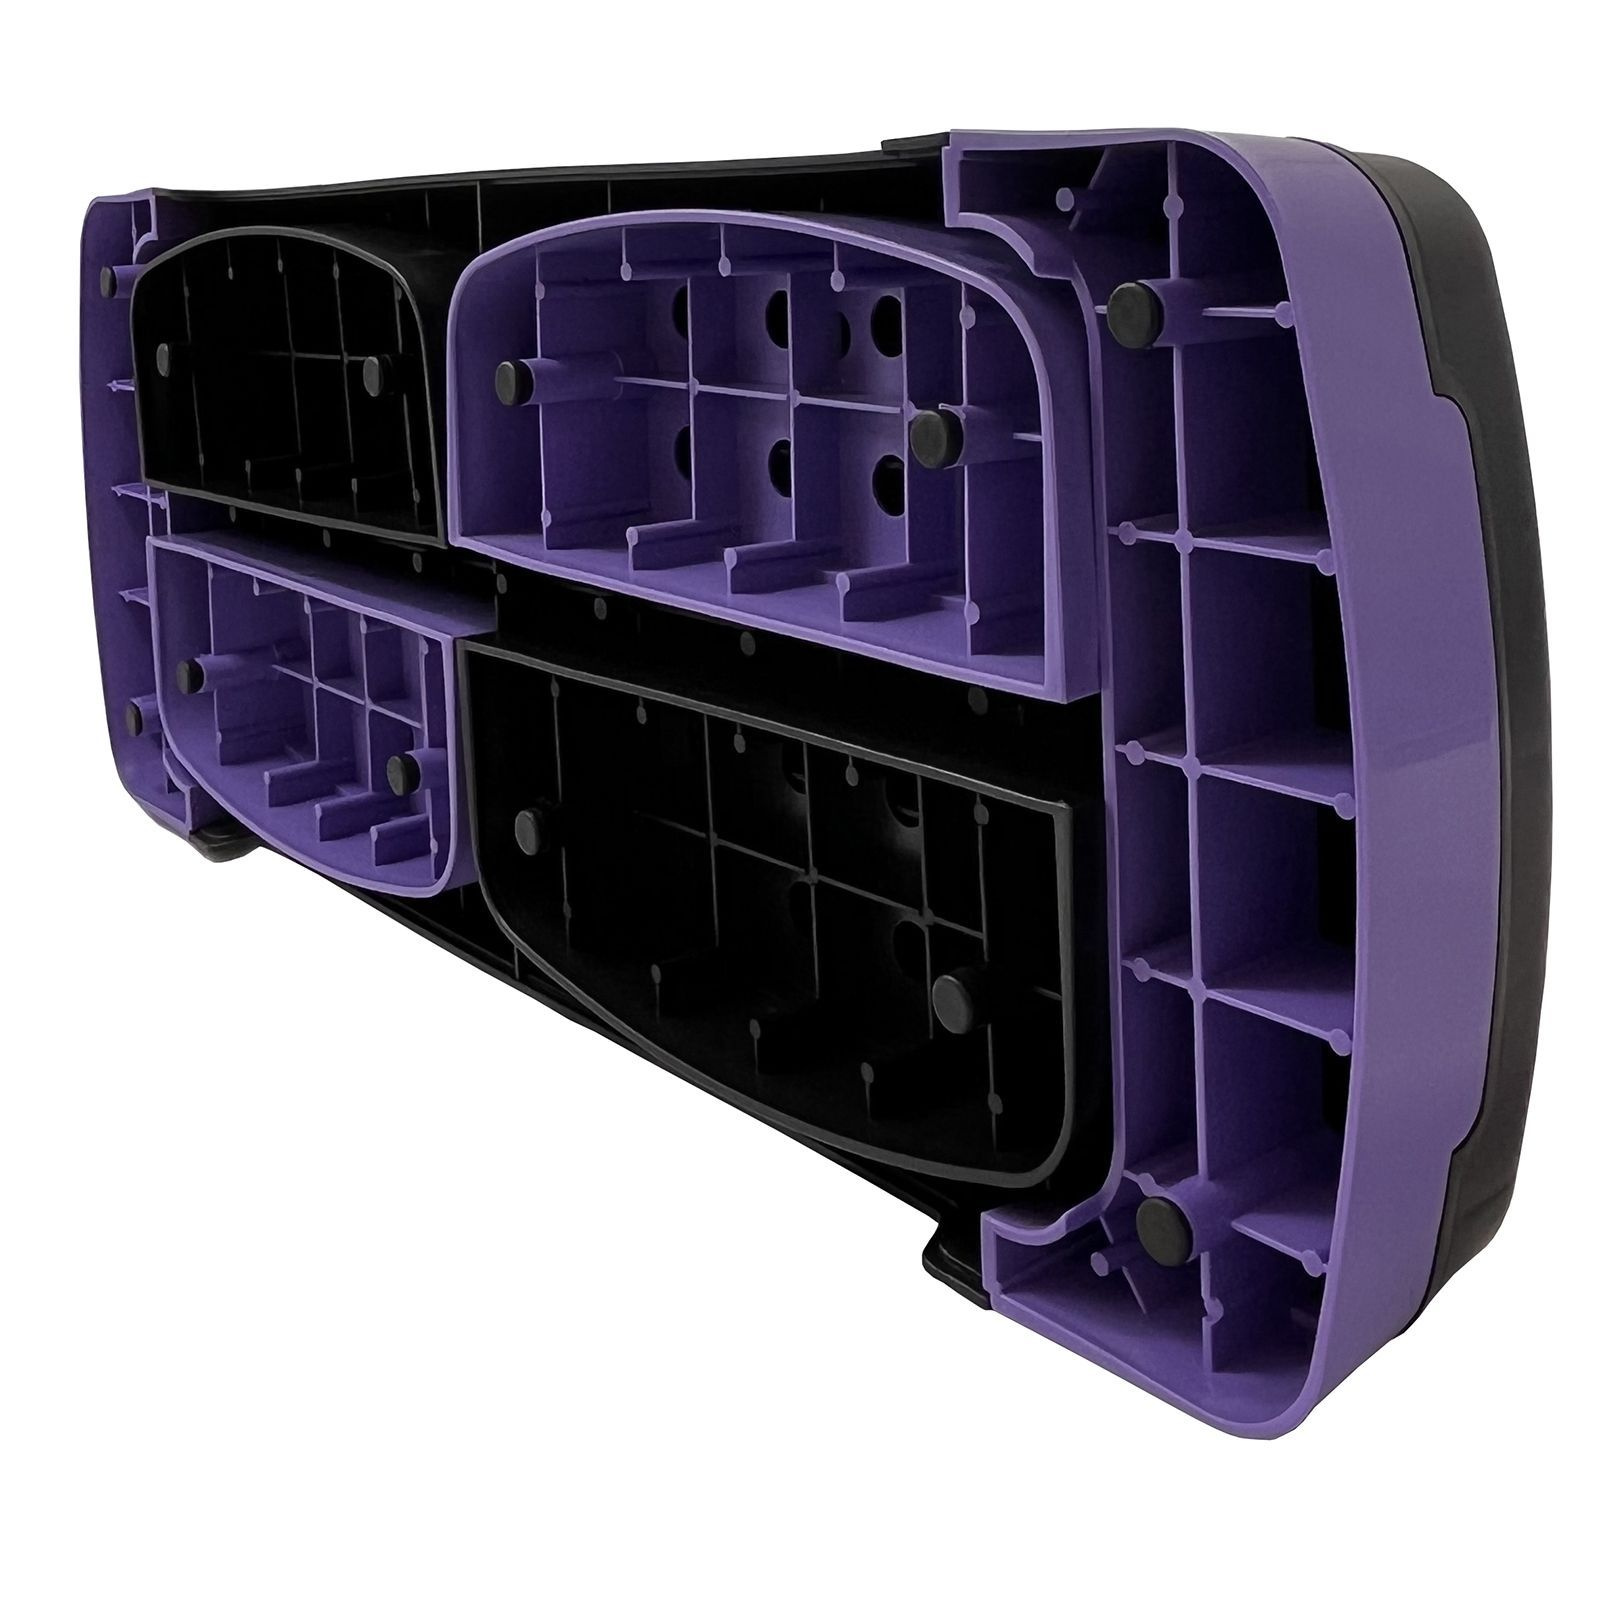 Степ-платформа UnixFit 2 уровня, 68 см, фиолетовый